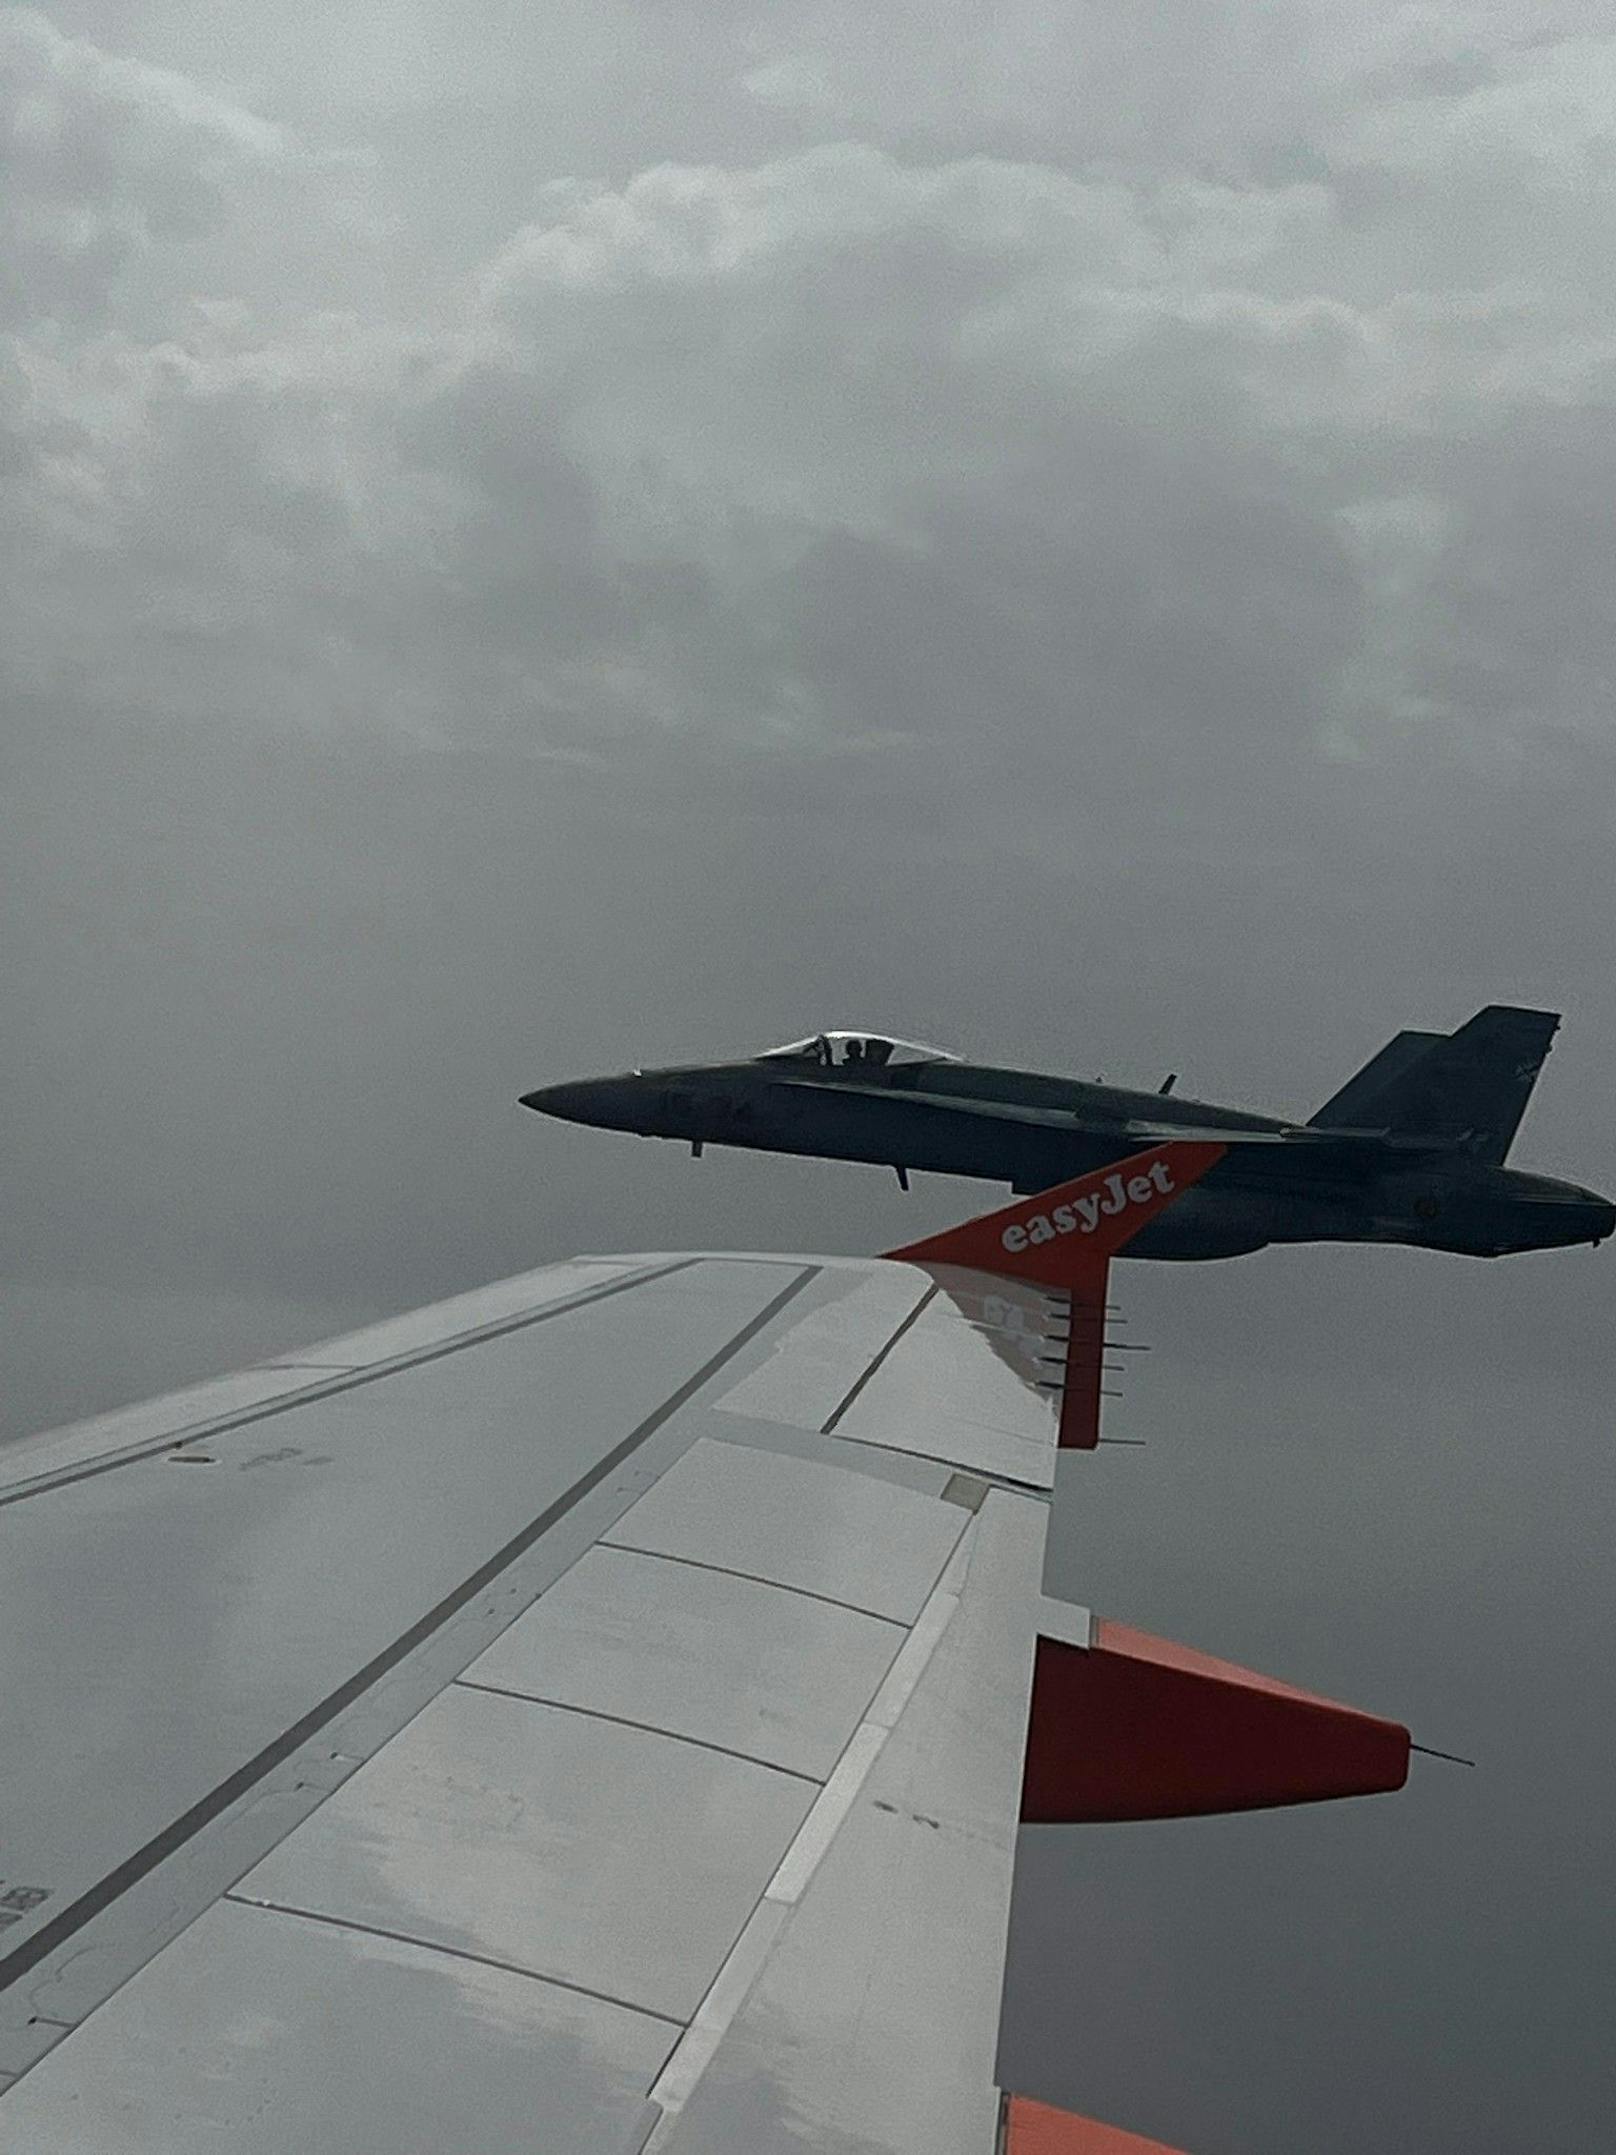 Kampfjet eskortiert Easyjet-Flieger nach Teenie-Drohung